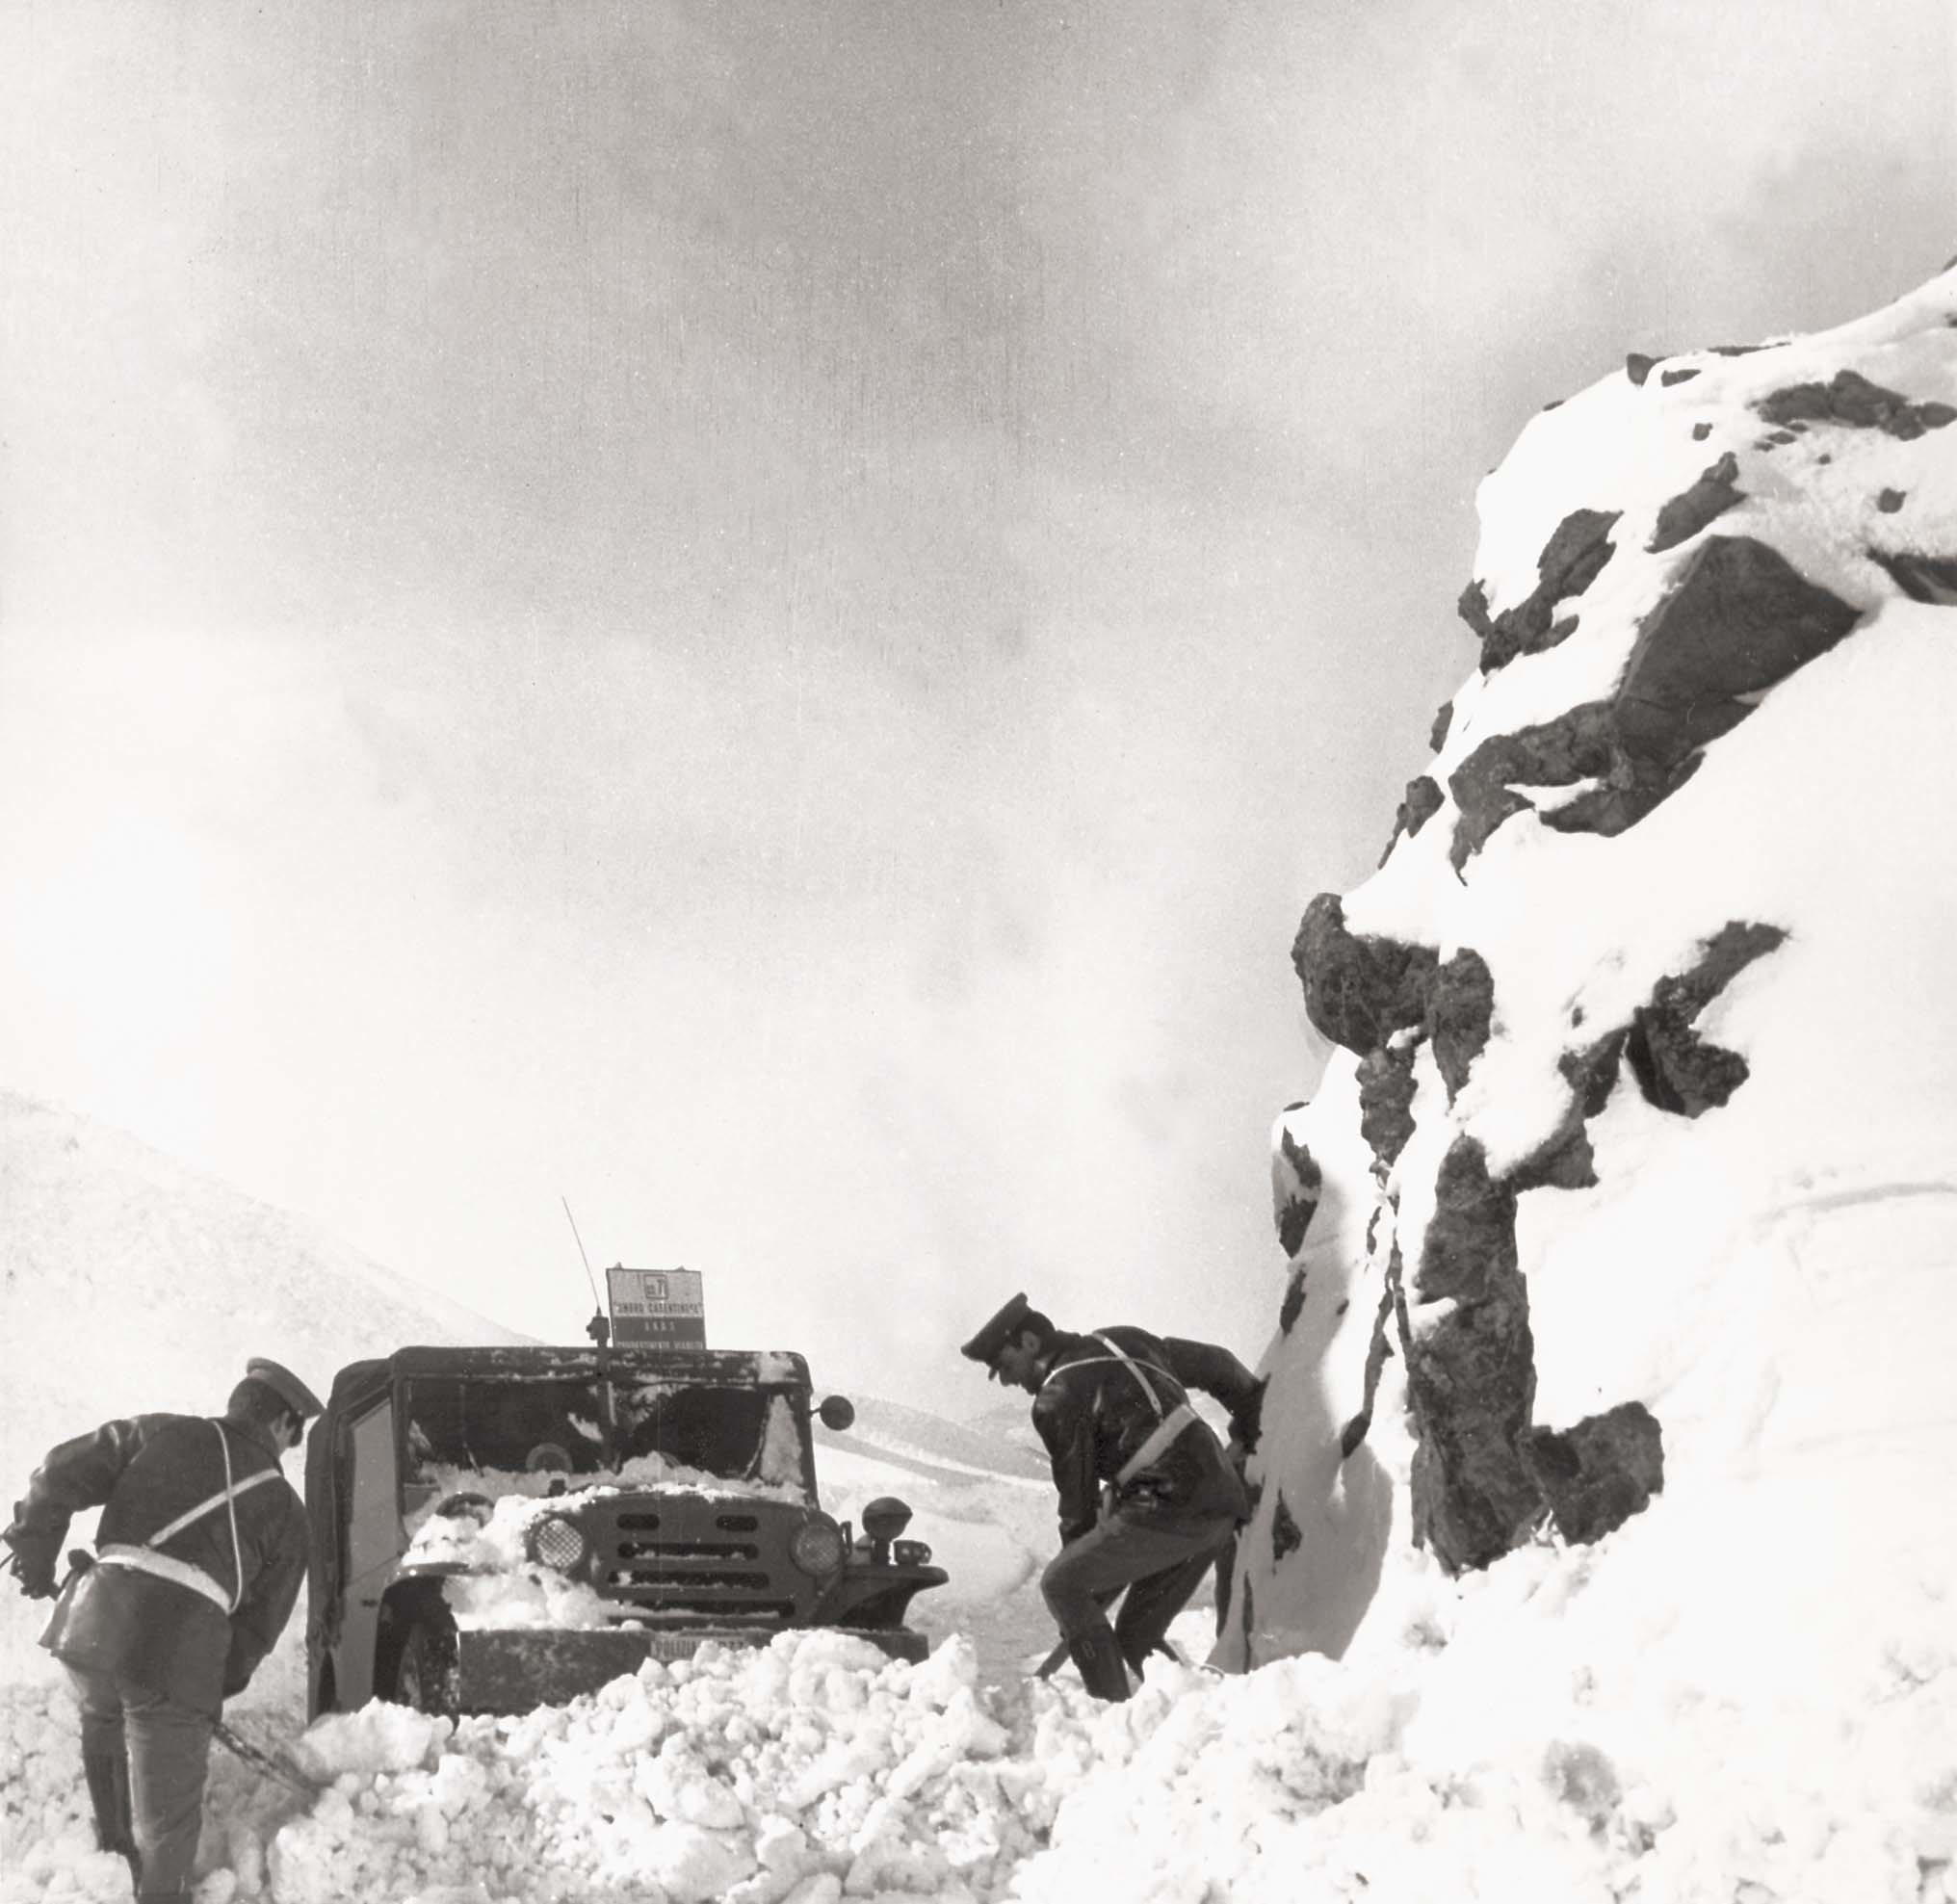 1970, operatori impegnati in servizio di assistenza alla popolazione a seguito di abbondante nevicata